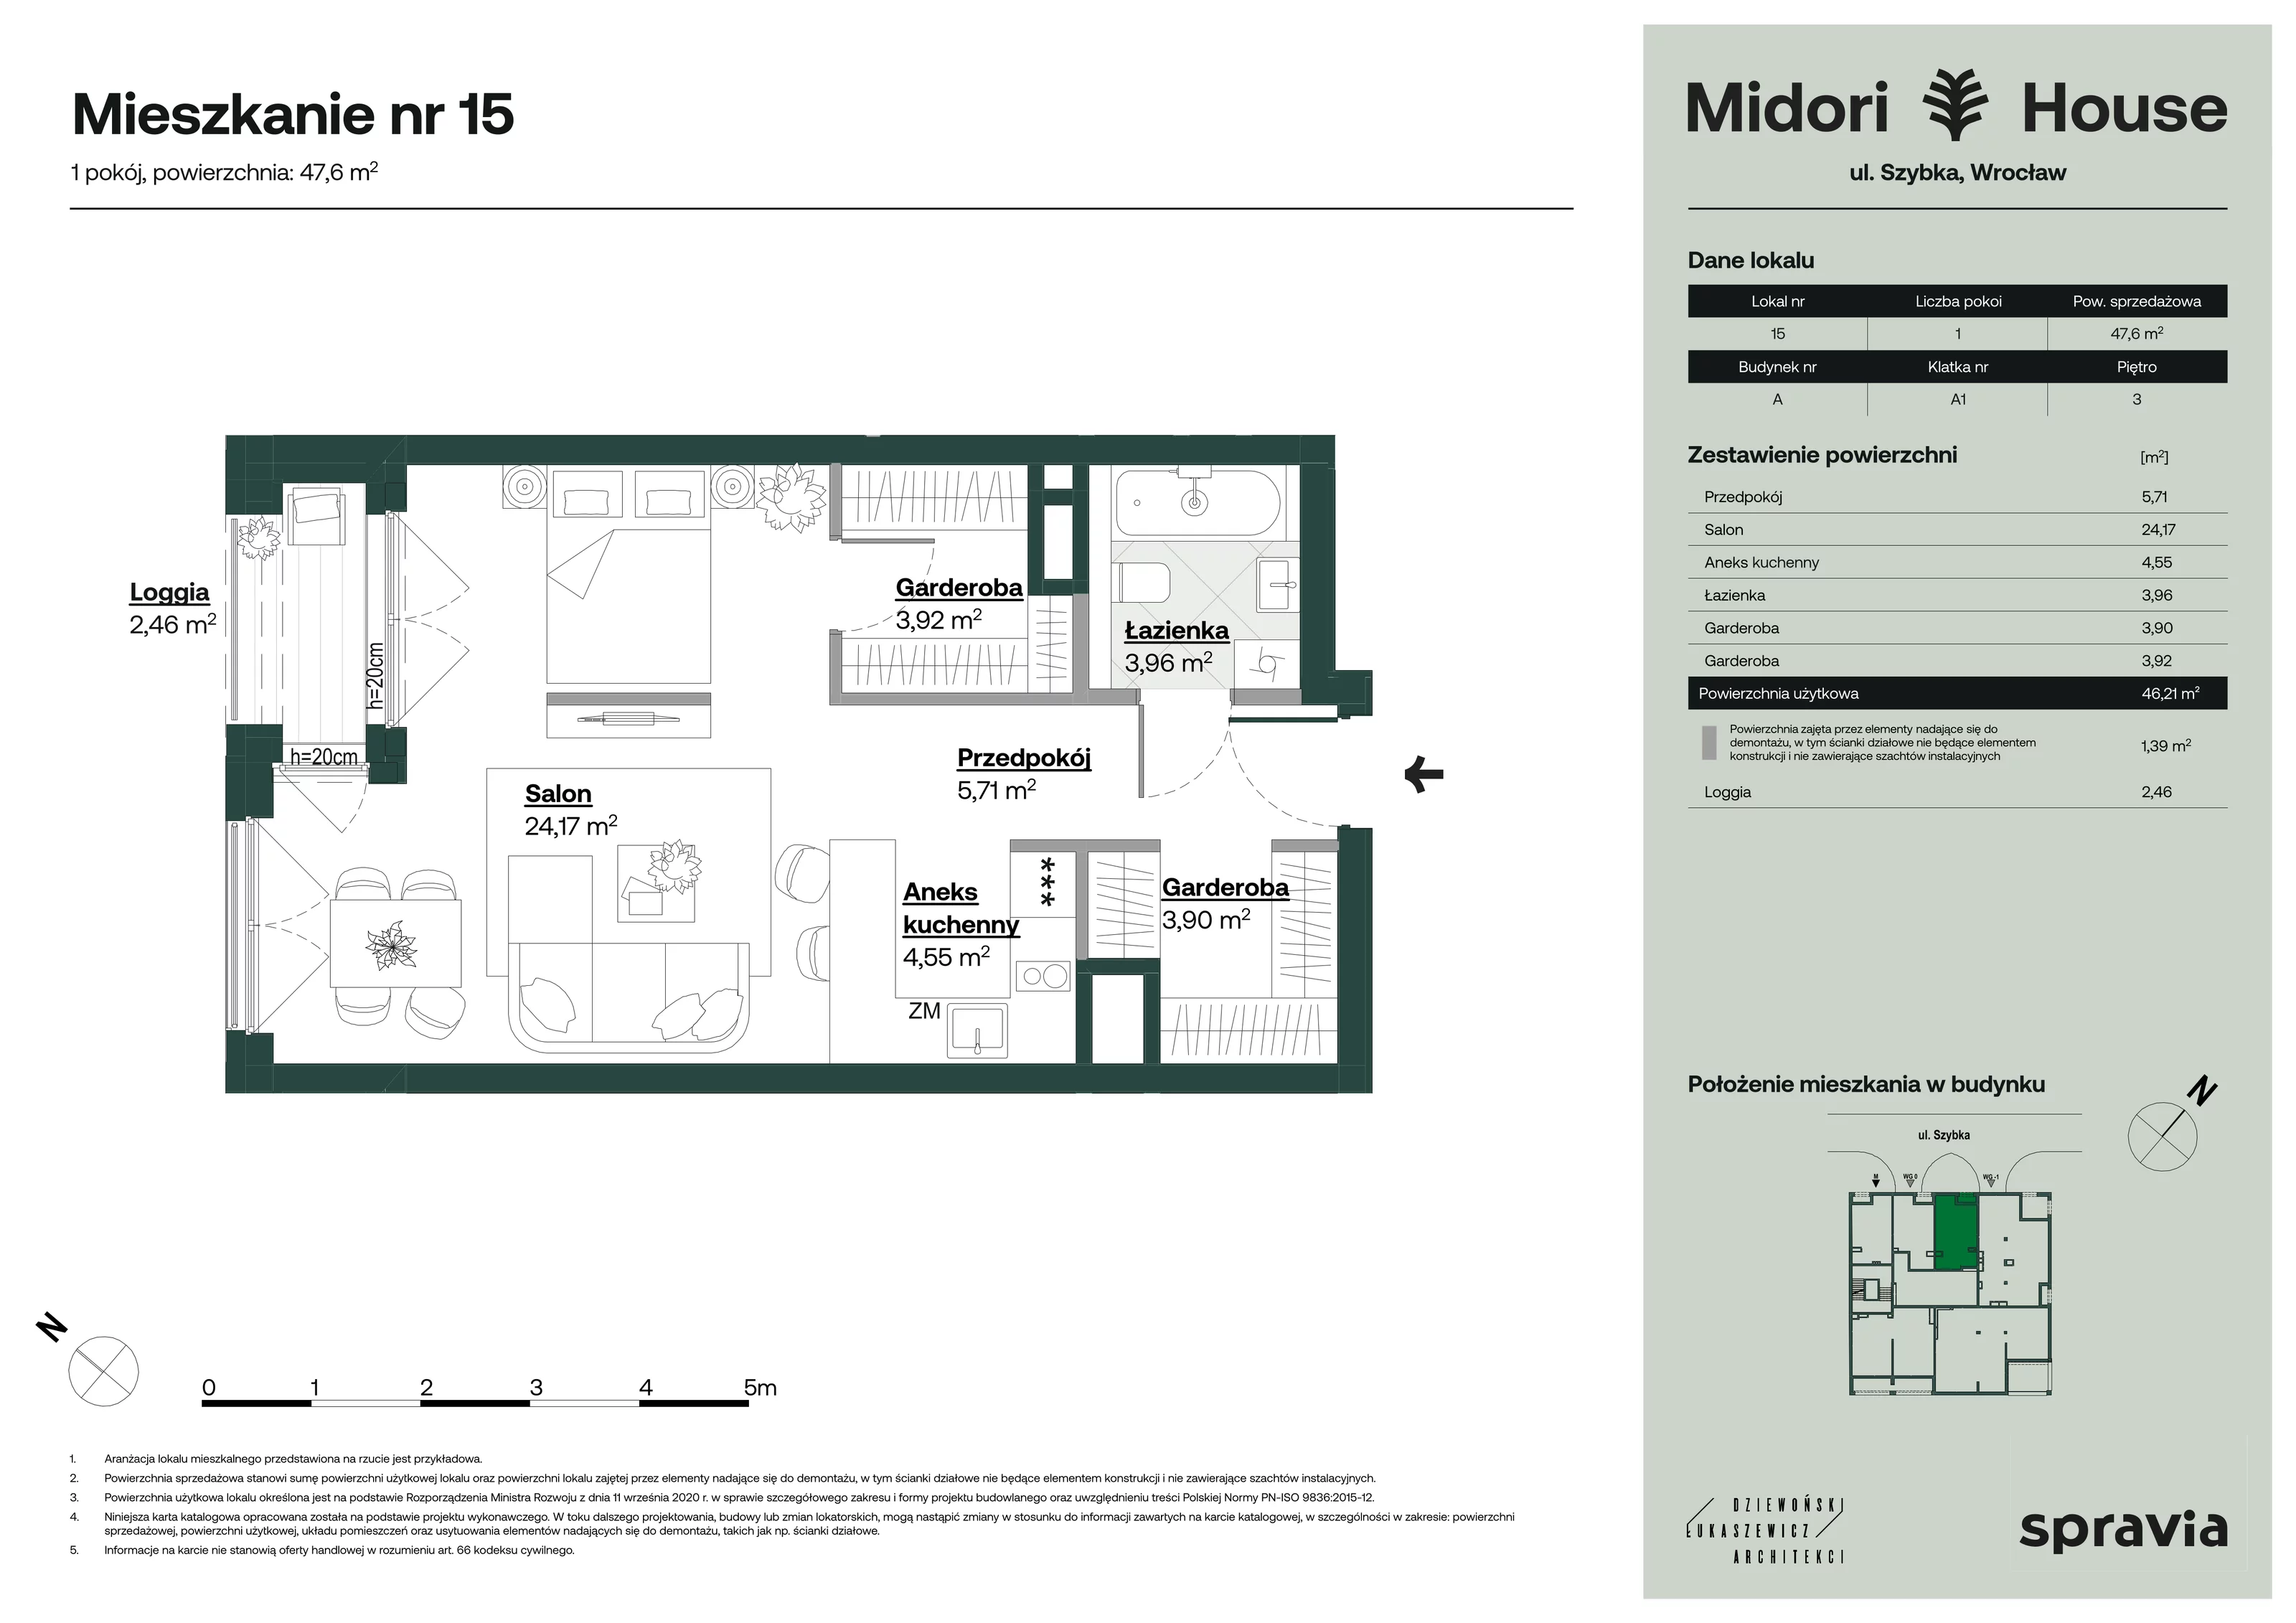 Mieszkanie 47,60 m², piętro 3, oferta nr 15, Midori House, Wrocław, Przedmieście Oławskie, ul. Szybka 9